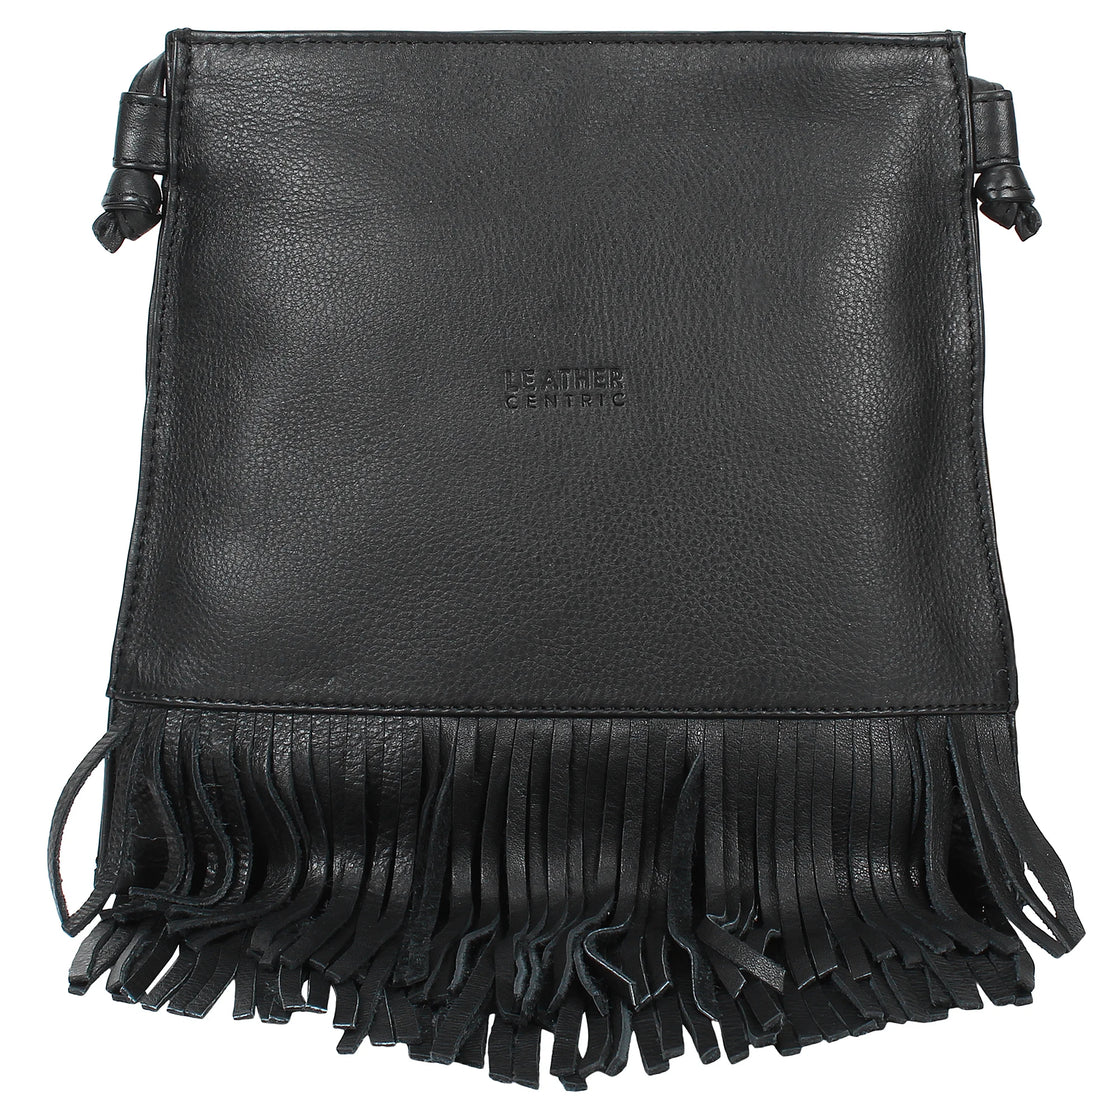 Leather Fringe Hobo Bag for Women (Medium, Black)